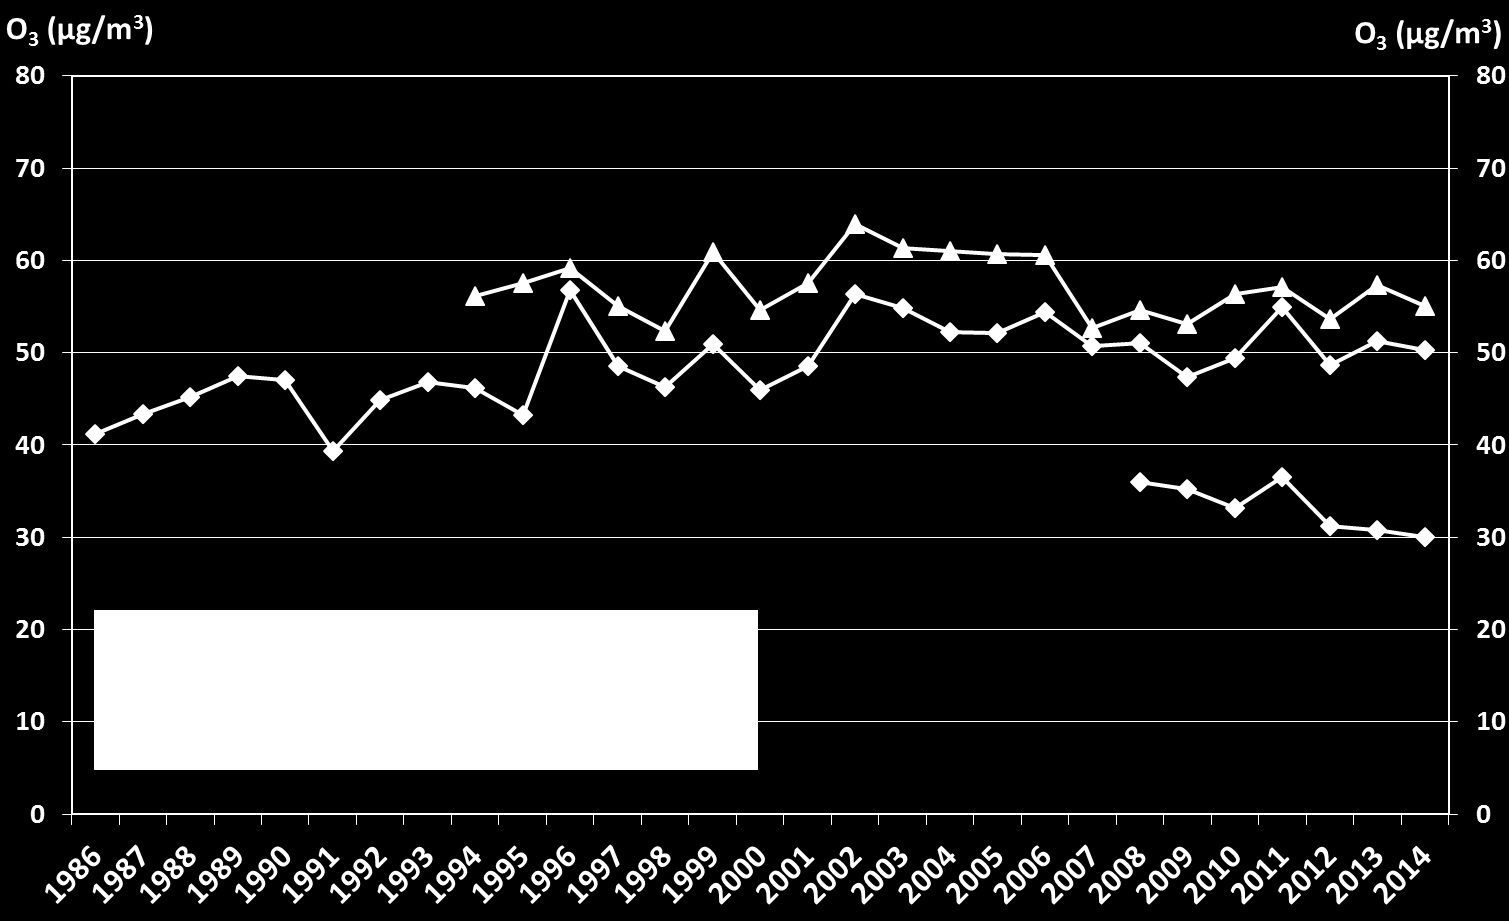 Tabell 22. Jämförelse av uppmätta halter av ozon, O 3, år 2014 med motsvarande värde för miljökvalitetsmålet.